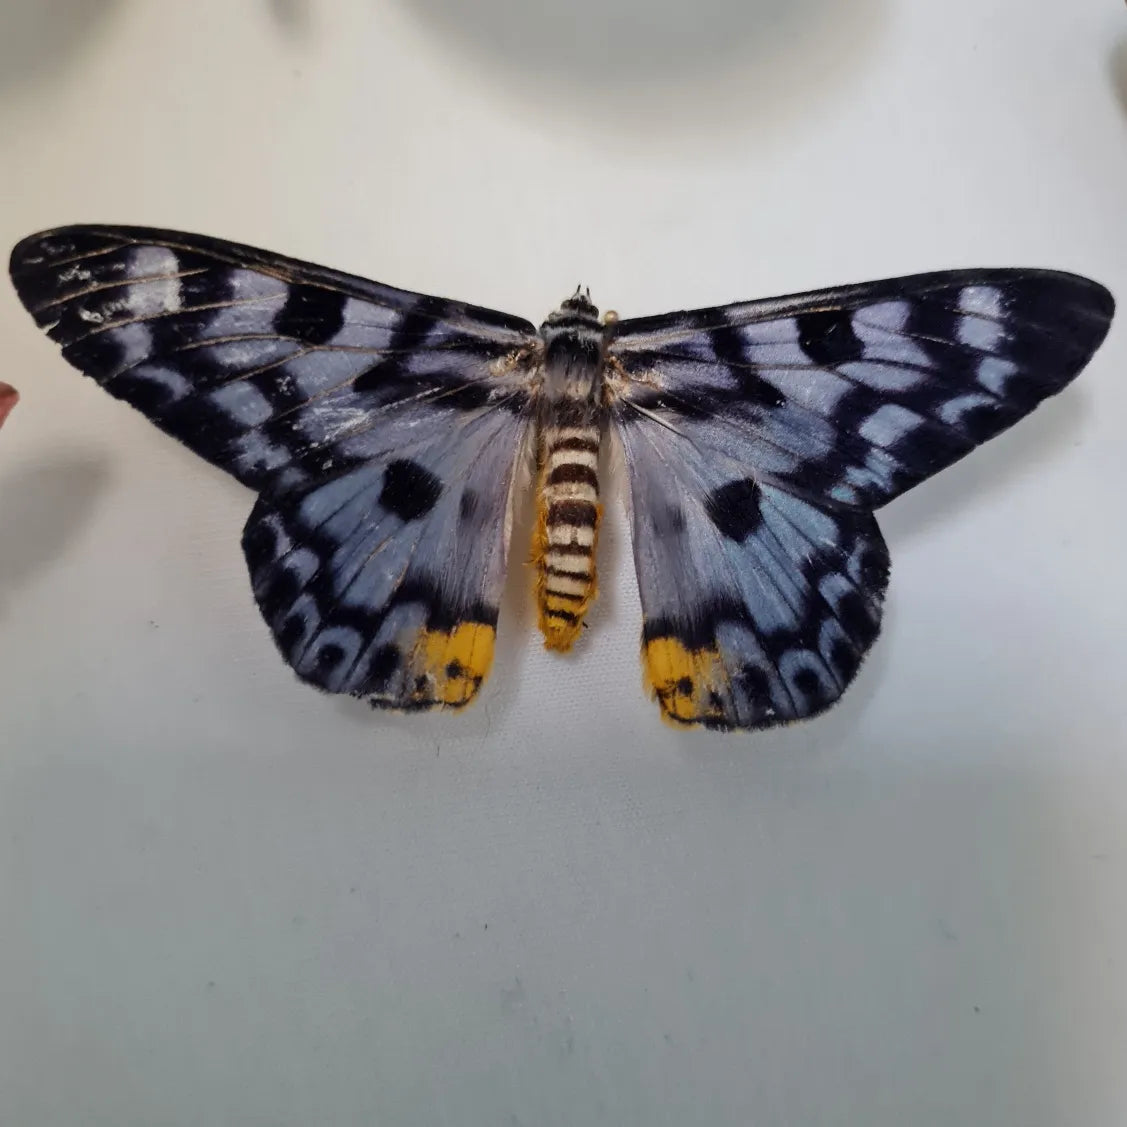 Dysphania transducta vlinder